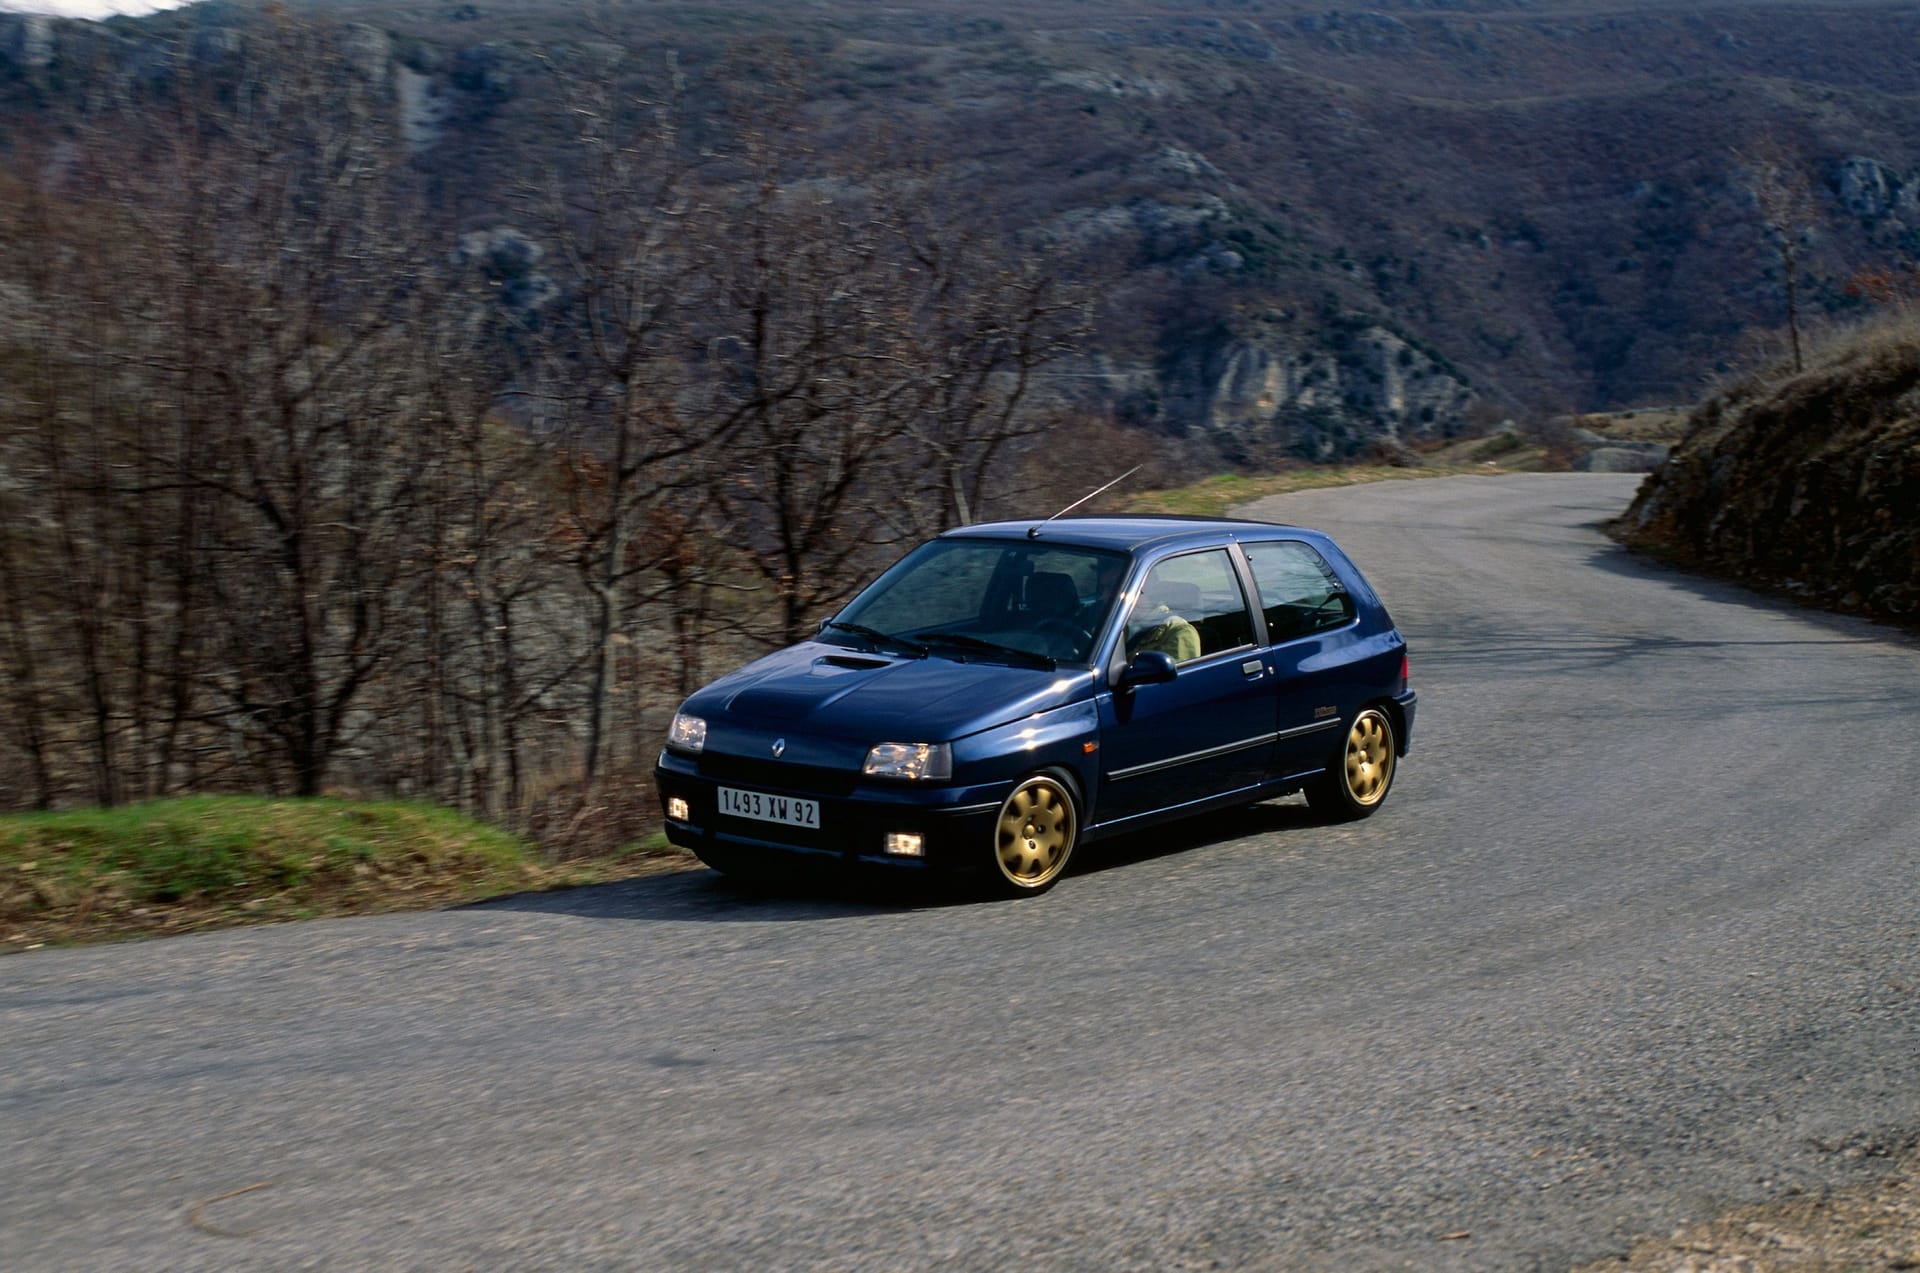 Zu den spektakulären Sondermodellen im Autojahr 1993 zählte der Renault Clio Williams.